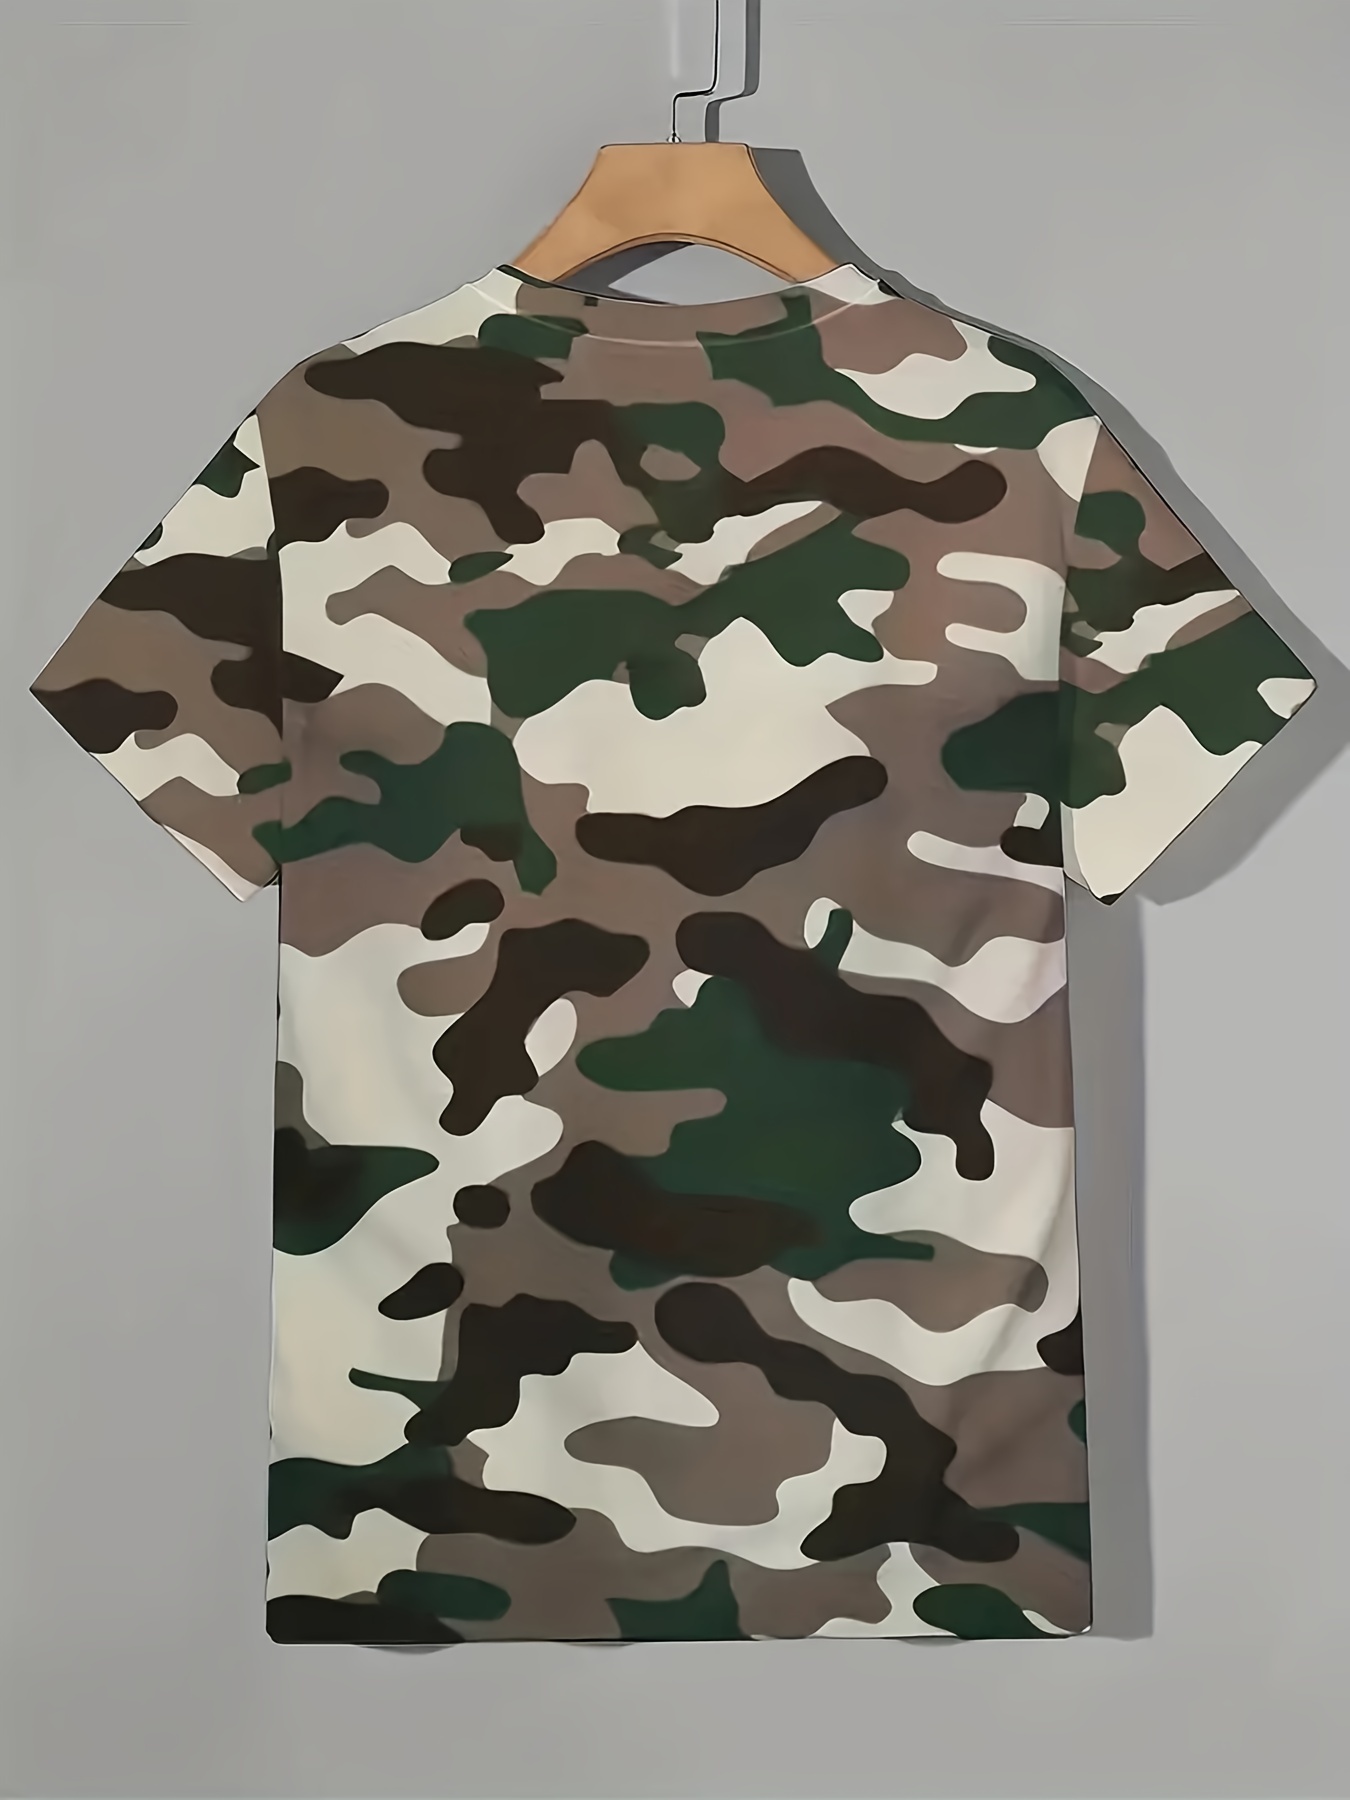 Ropa Militar Táctica De Camuflaje Para Hombre, Camiseta Ajustada De Manga  Larga